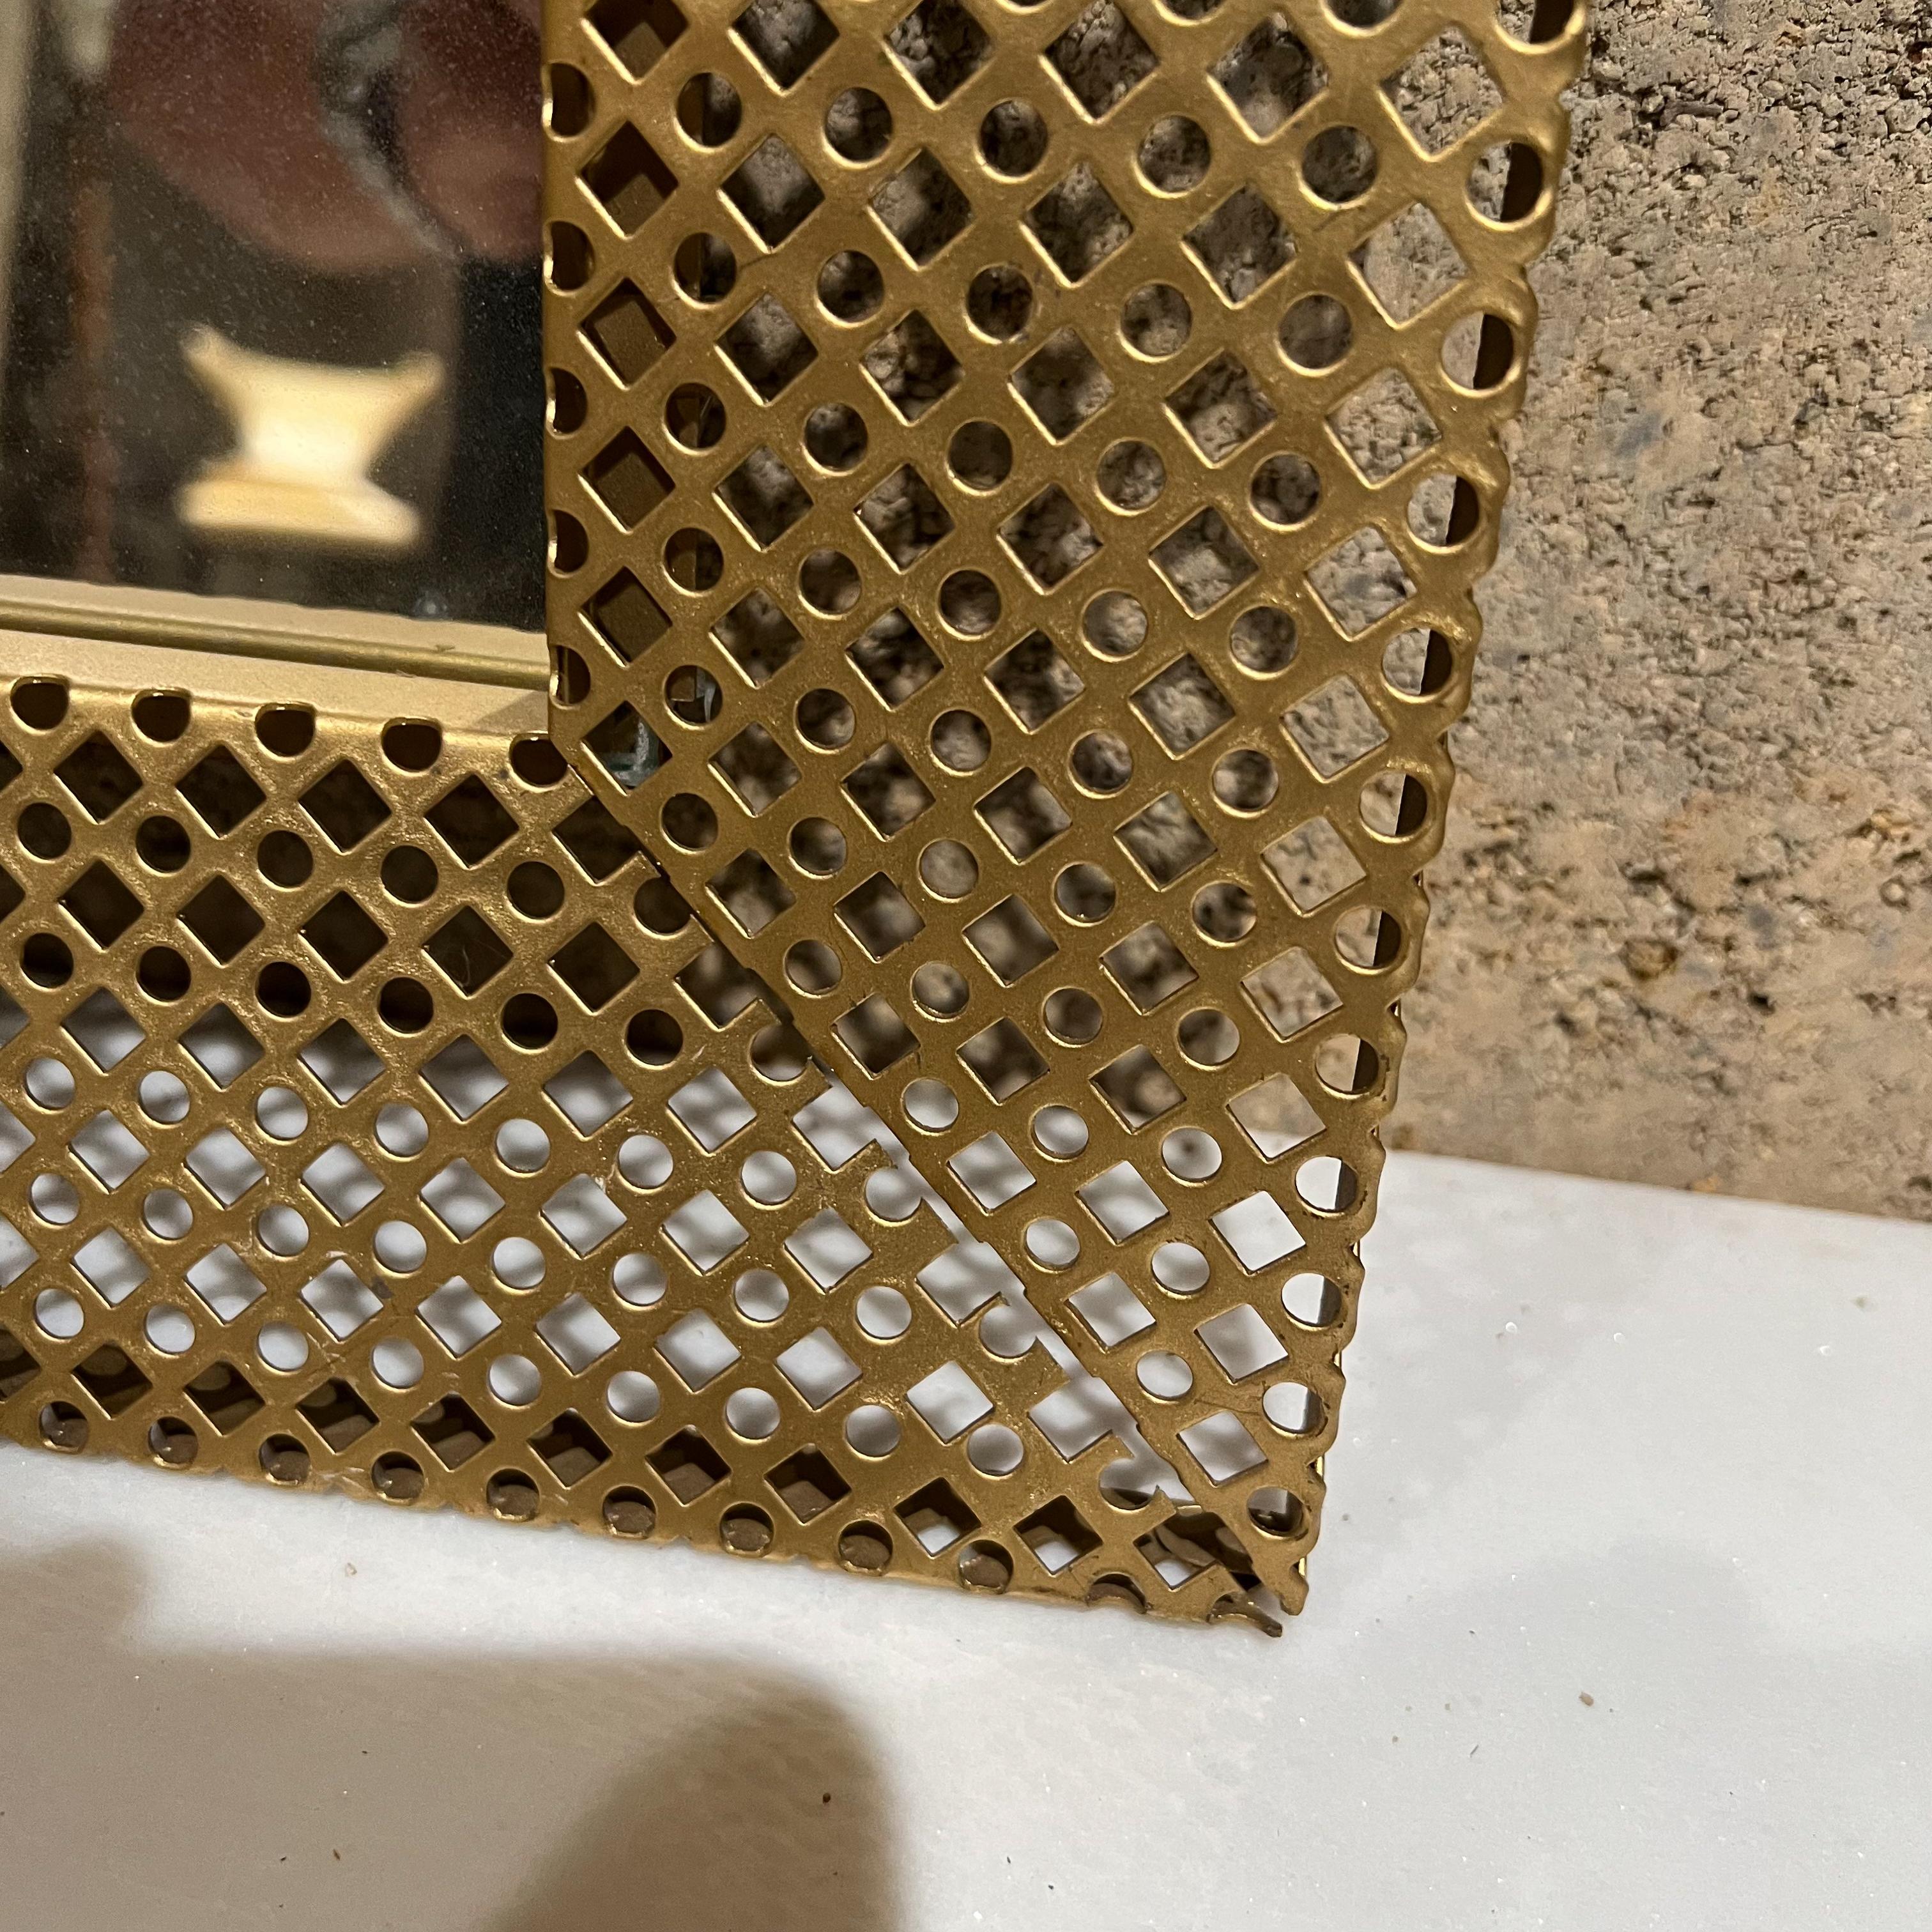 Italienische Vintage perforiert Gold Metall Spiegel Bilderrahmen Italien 1950er Jahre 
Im Stil des bekannten französischen MATERIAL-Künstlers Mathieu Mategot
Maße: 14,63 x 12 B x 1,5 T
Original Preowned Vintage unrestauriert Zustand.
Siehe